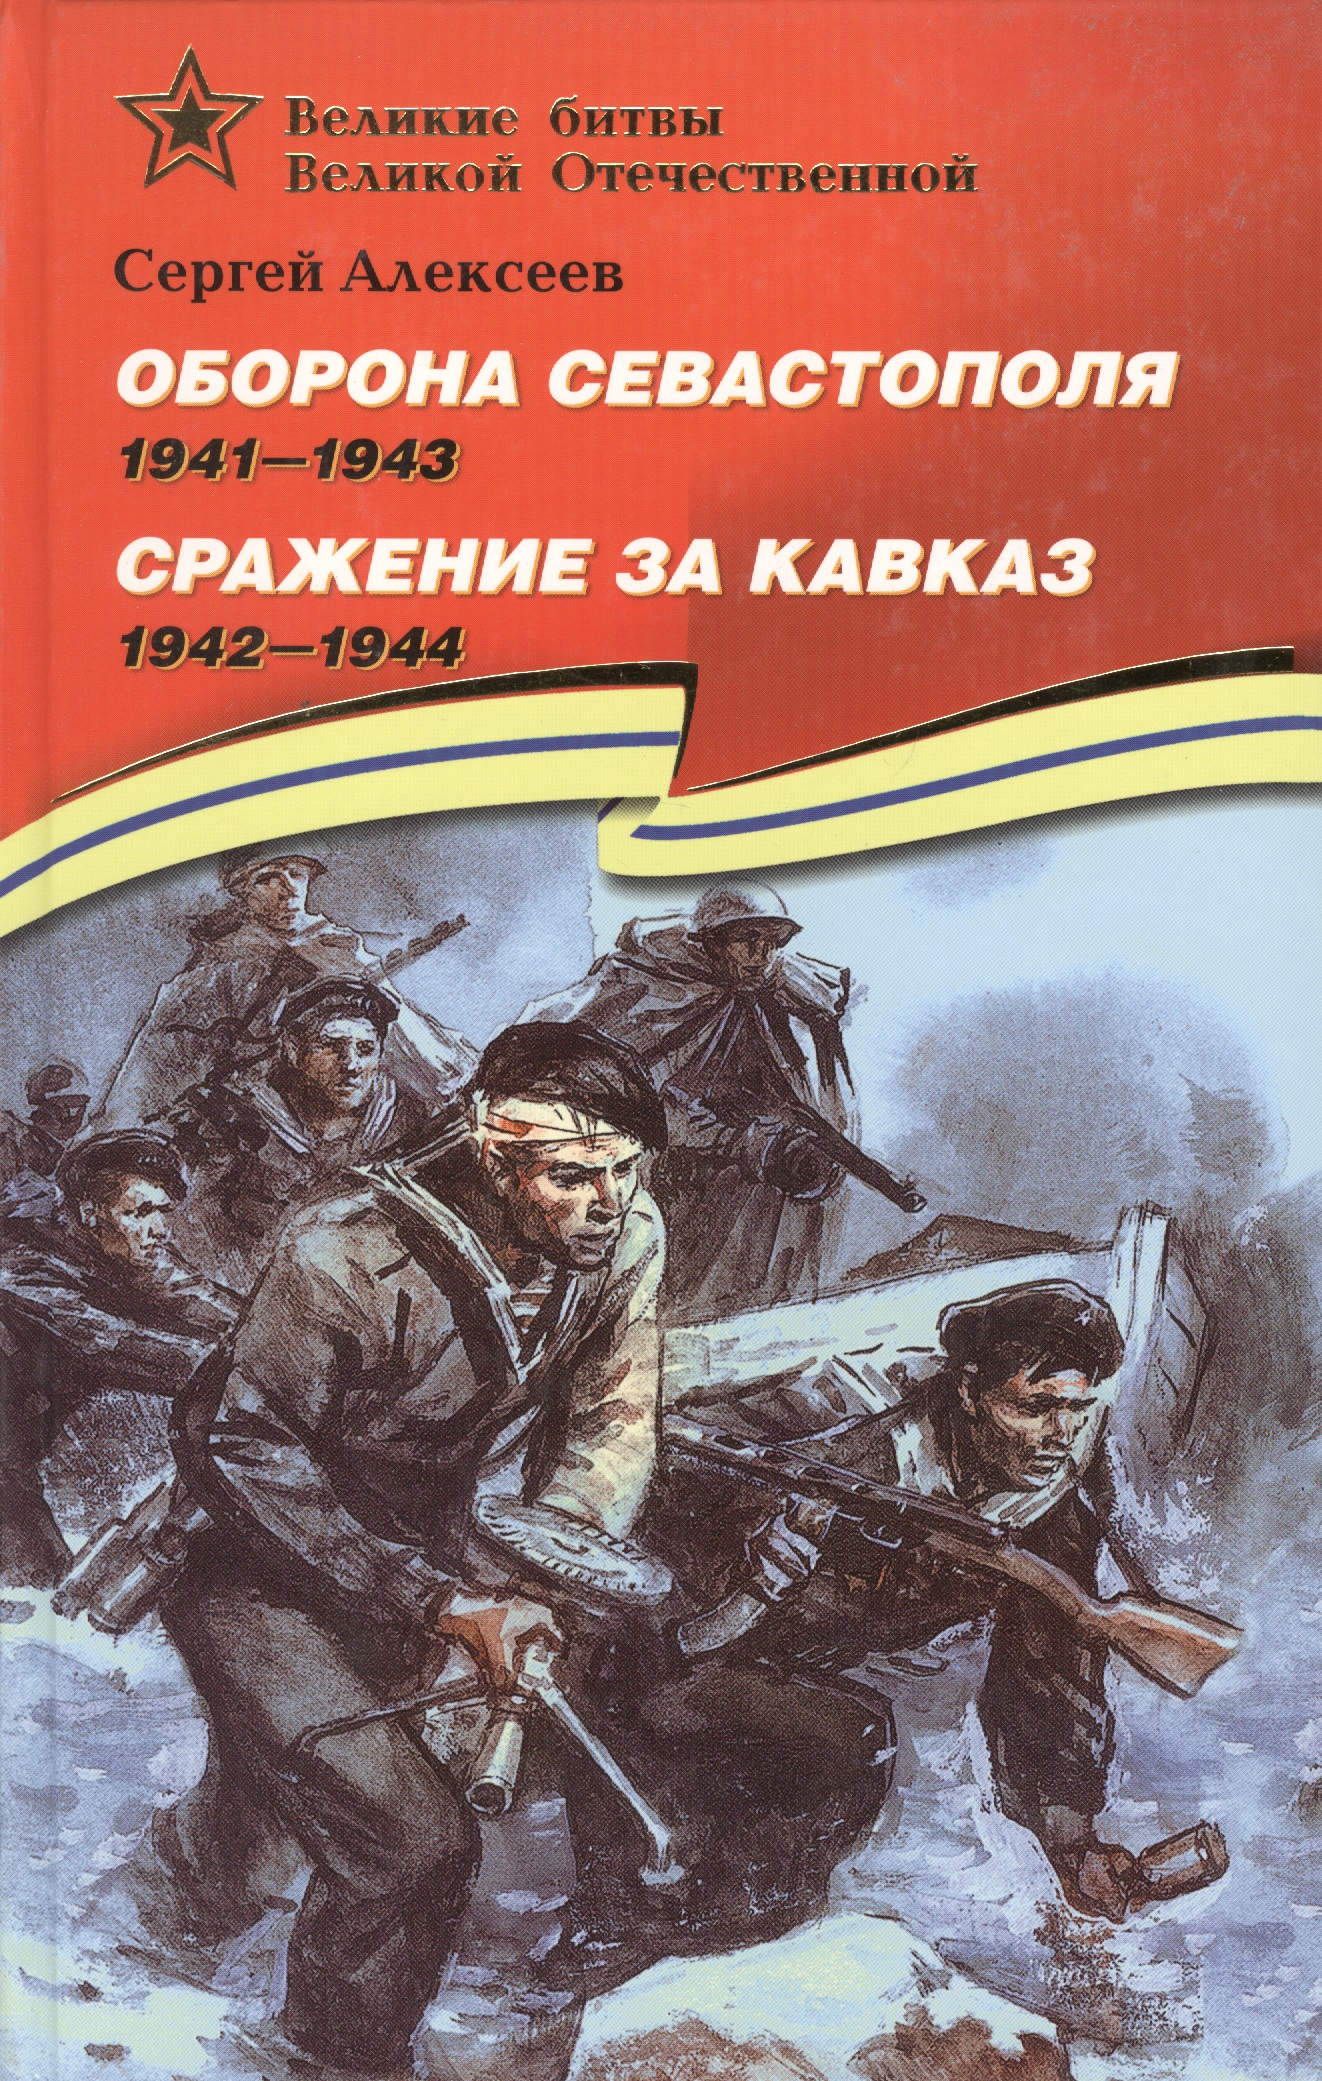   (1941-1943).    (1942 1944)